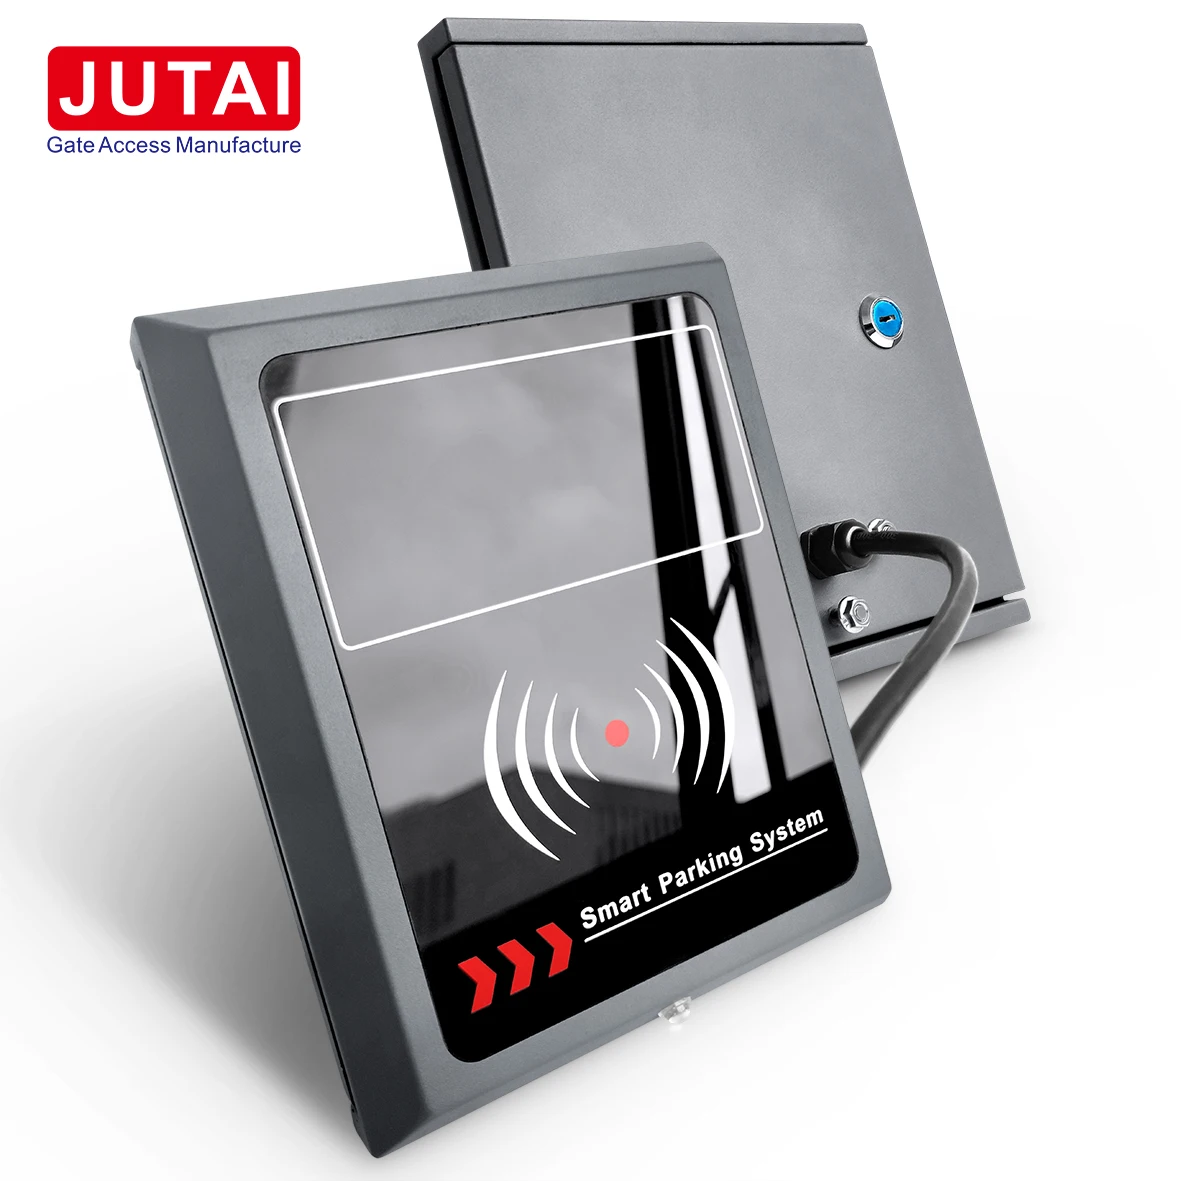 يشتمل القارئ النشط JUTAI طويل المدى UHF RFID على علامات نشطة